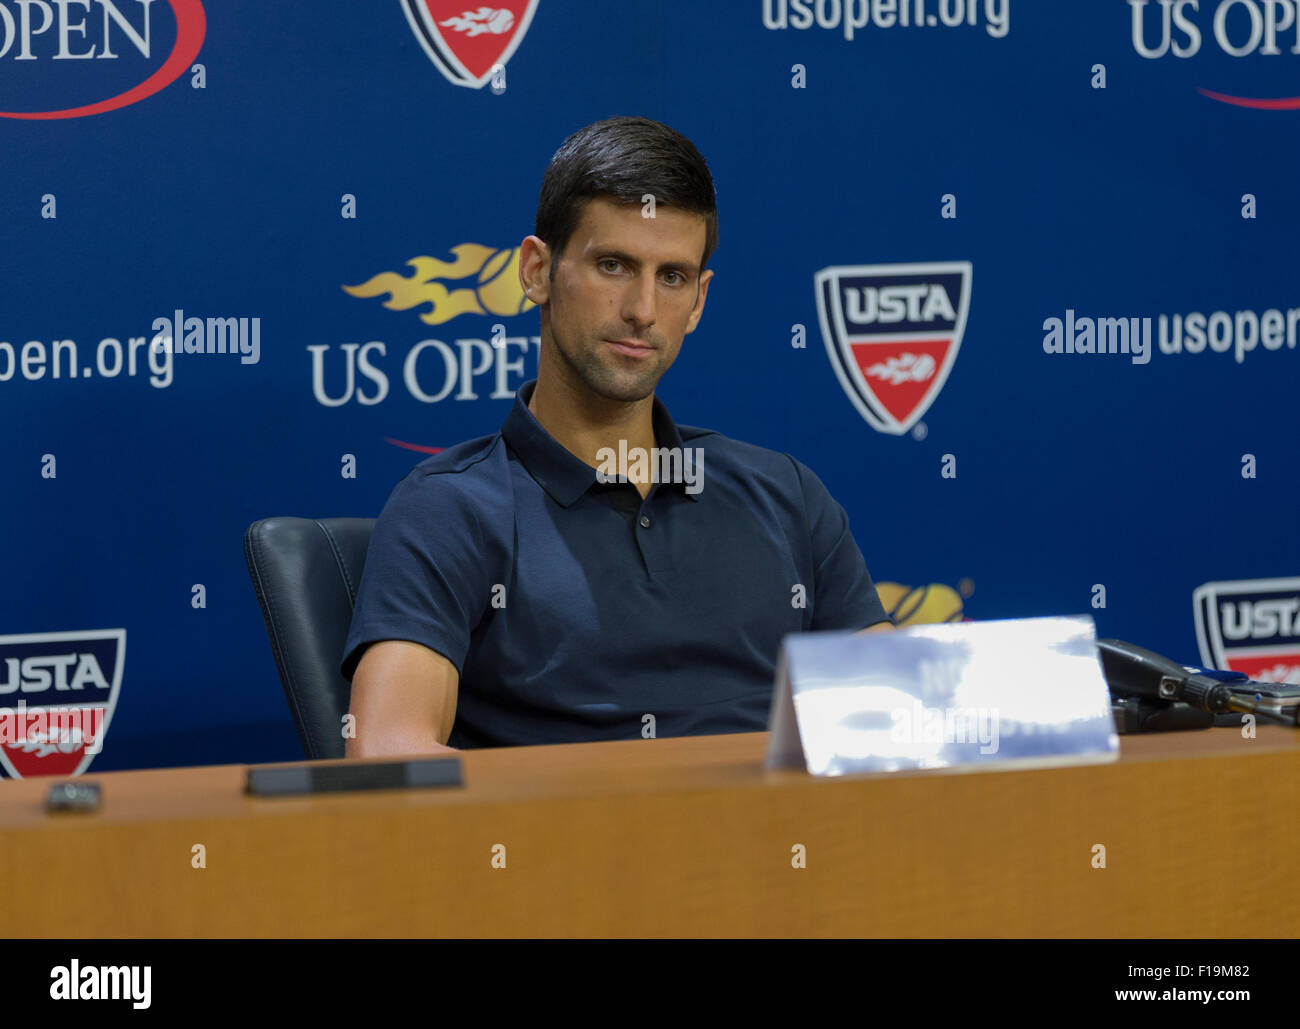 New York, NY - 29 août 2015 : Novak Djokovic de Serbie assiste à la conférence de presse à l'US Open Championship en Arthur Ash Stadium Banque D'Images